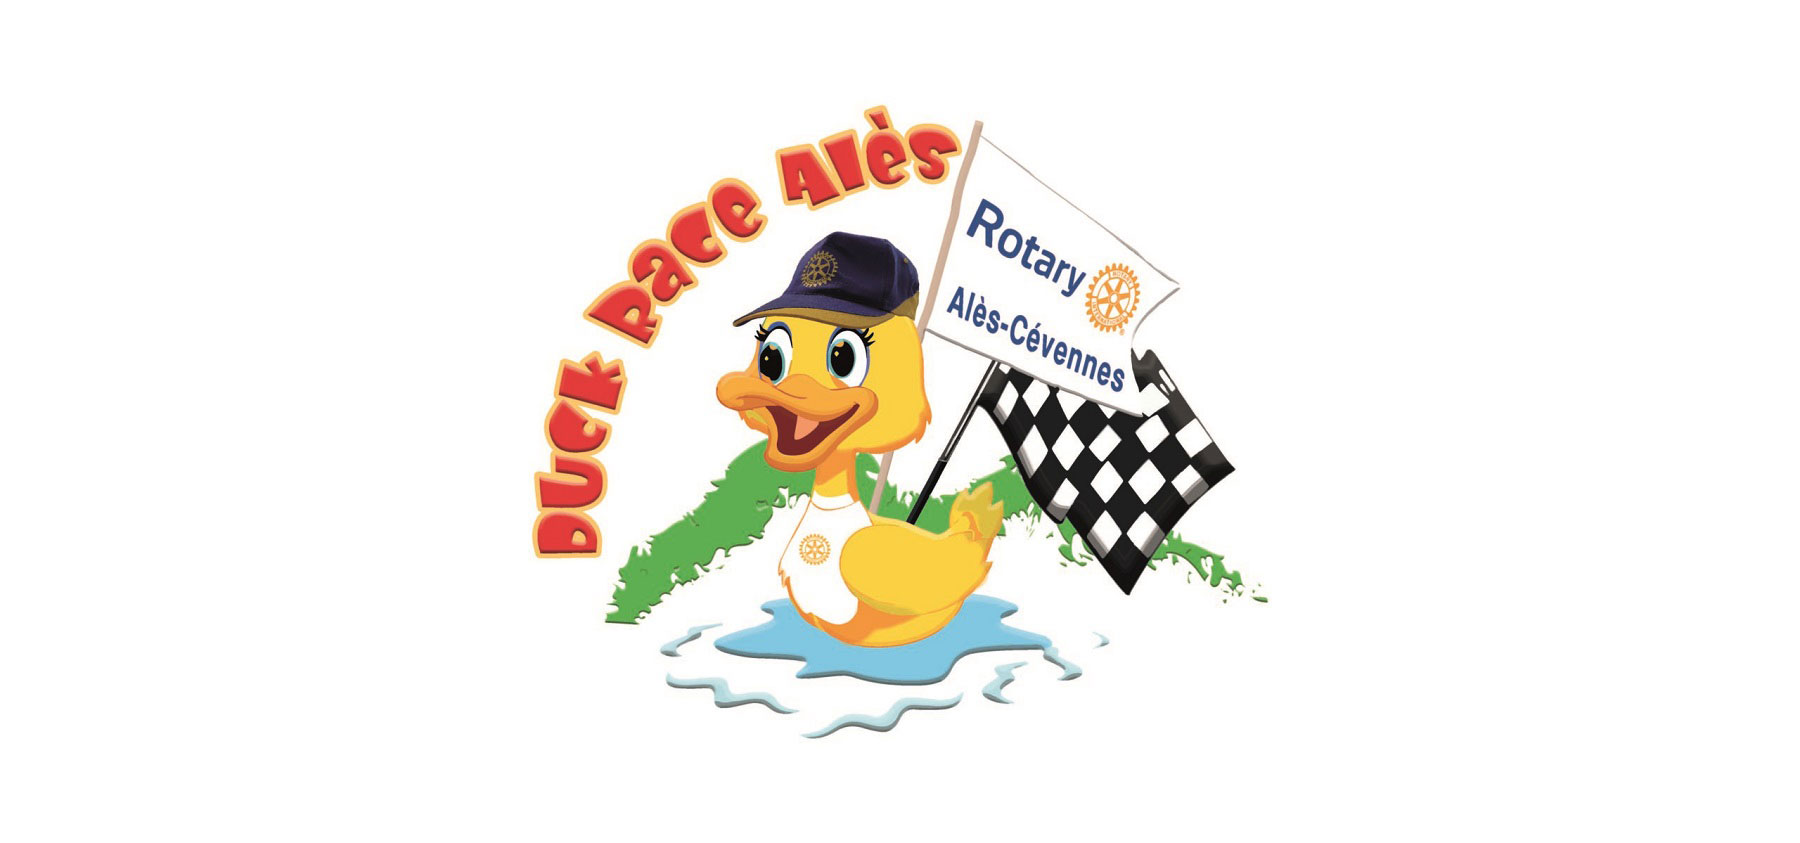 logo duck race en fond